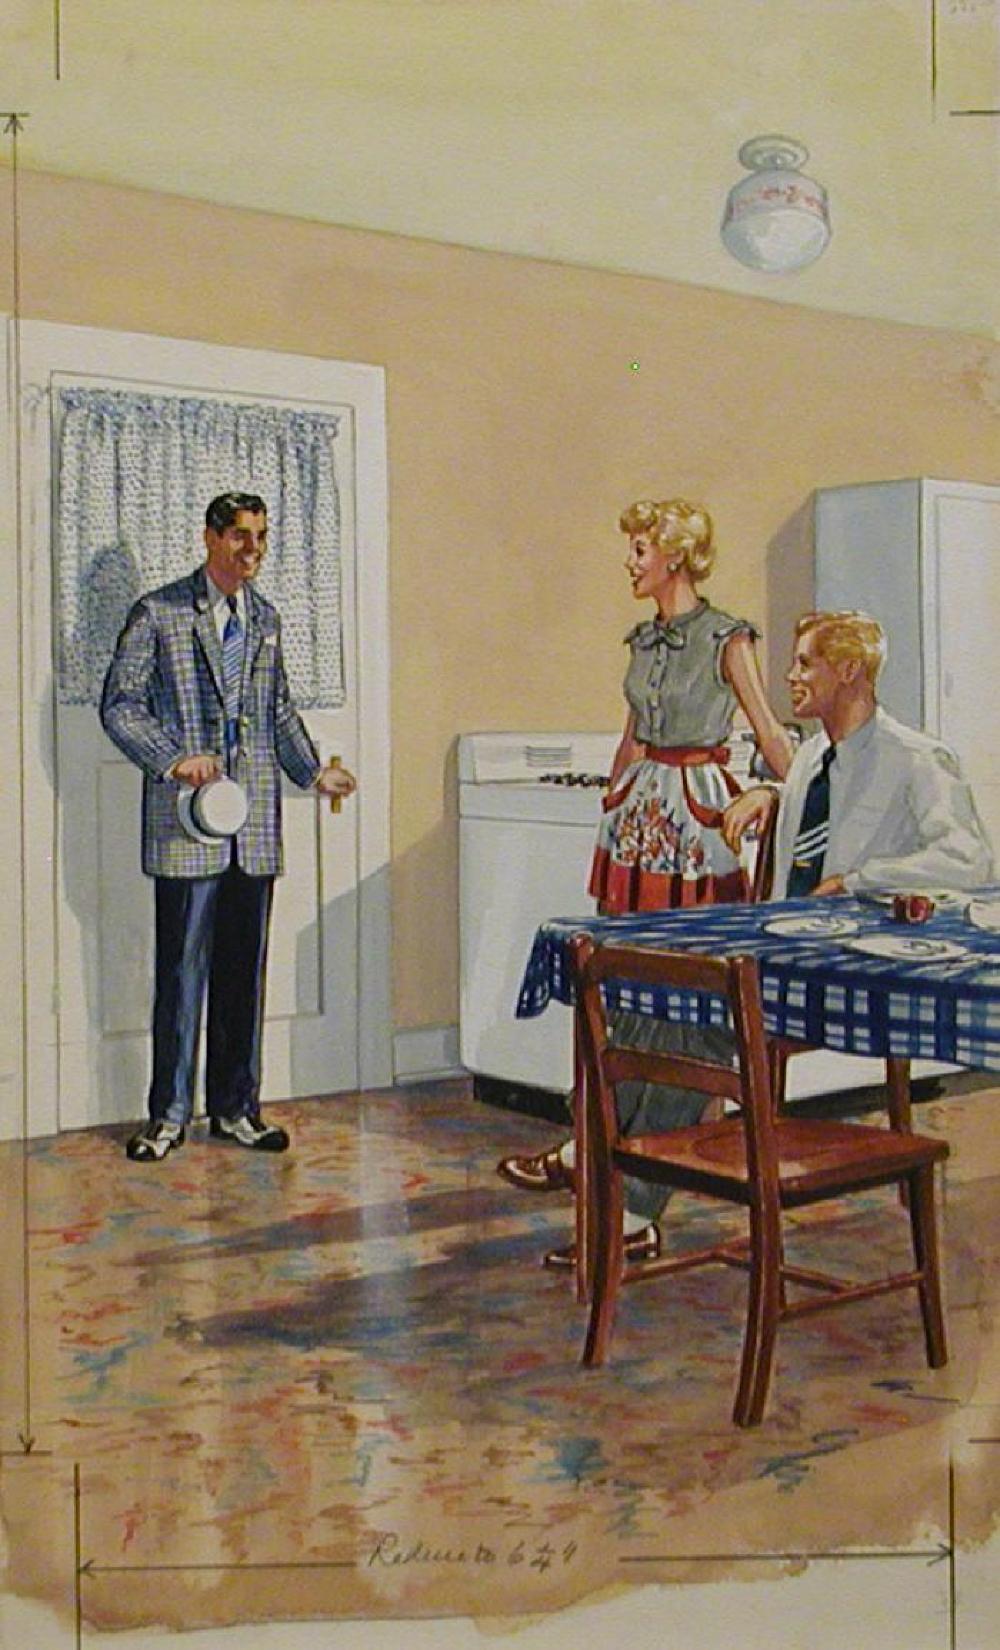 Illustration: Kitchen scene